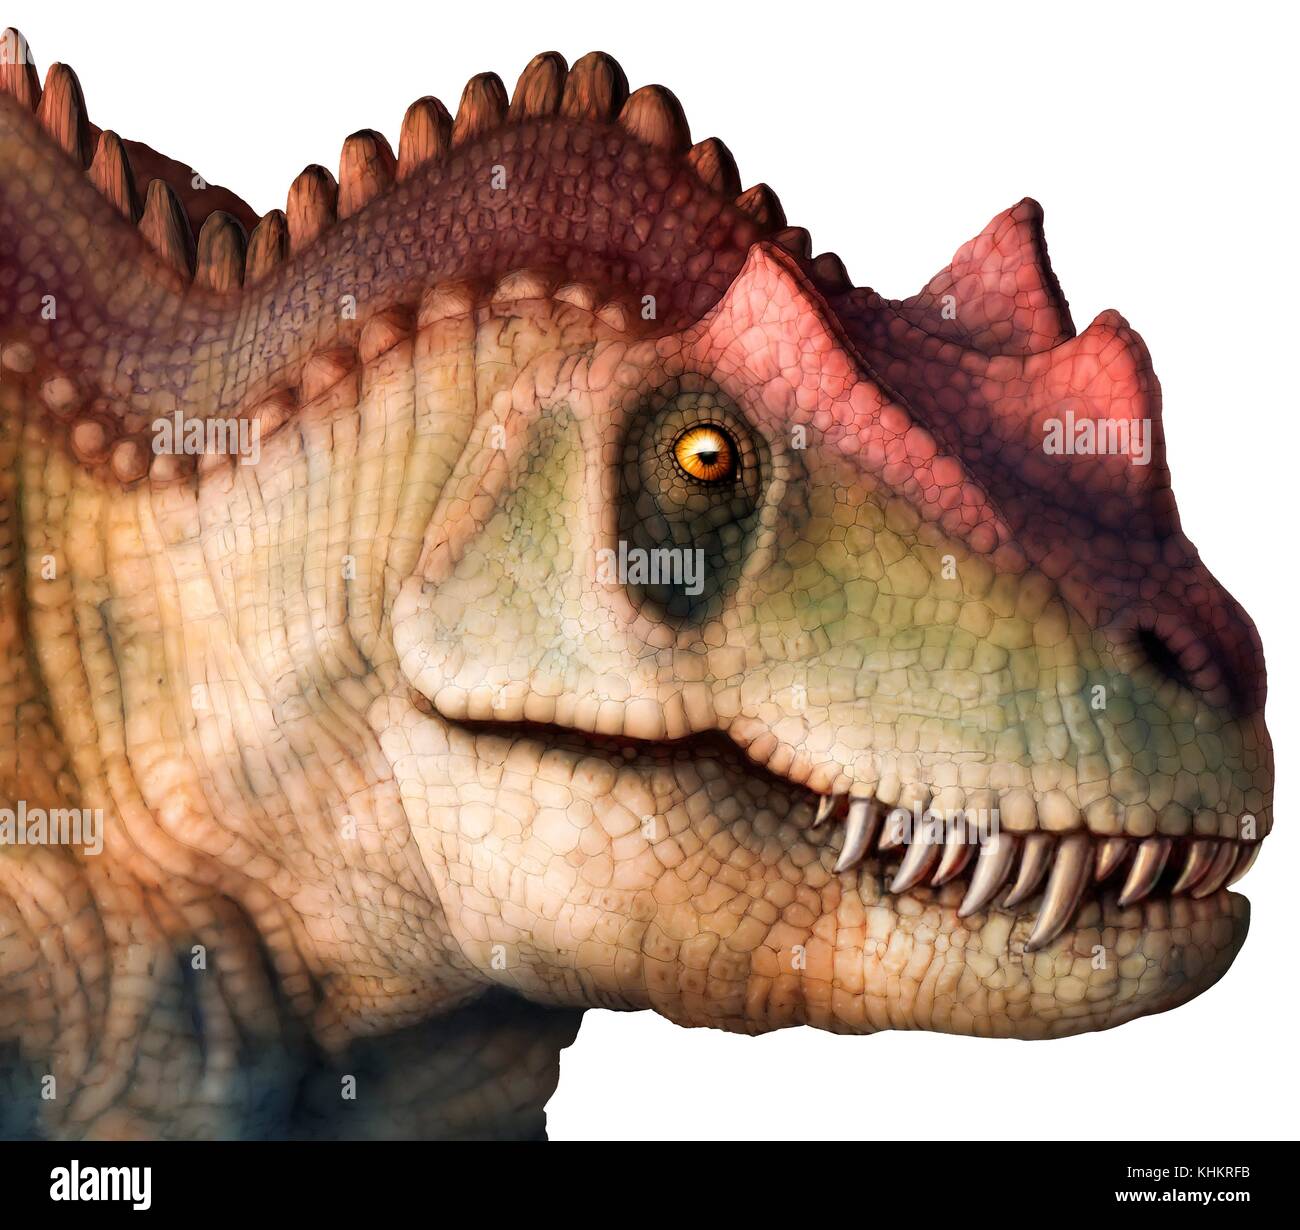 Abbildung: Der Kopf eines Ceratosaurus sp. Dinosaurier. Dieses große fleischfressende Theropode Saurier während der späten Jura (153-148 Millionen Jahren lebte) in Nordamerika. Sie erreichen Längen von 6 bis 7 Meter. Stockfoto